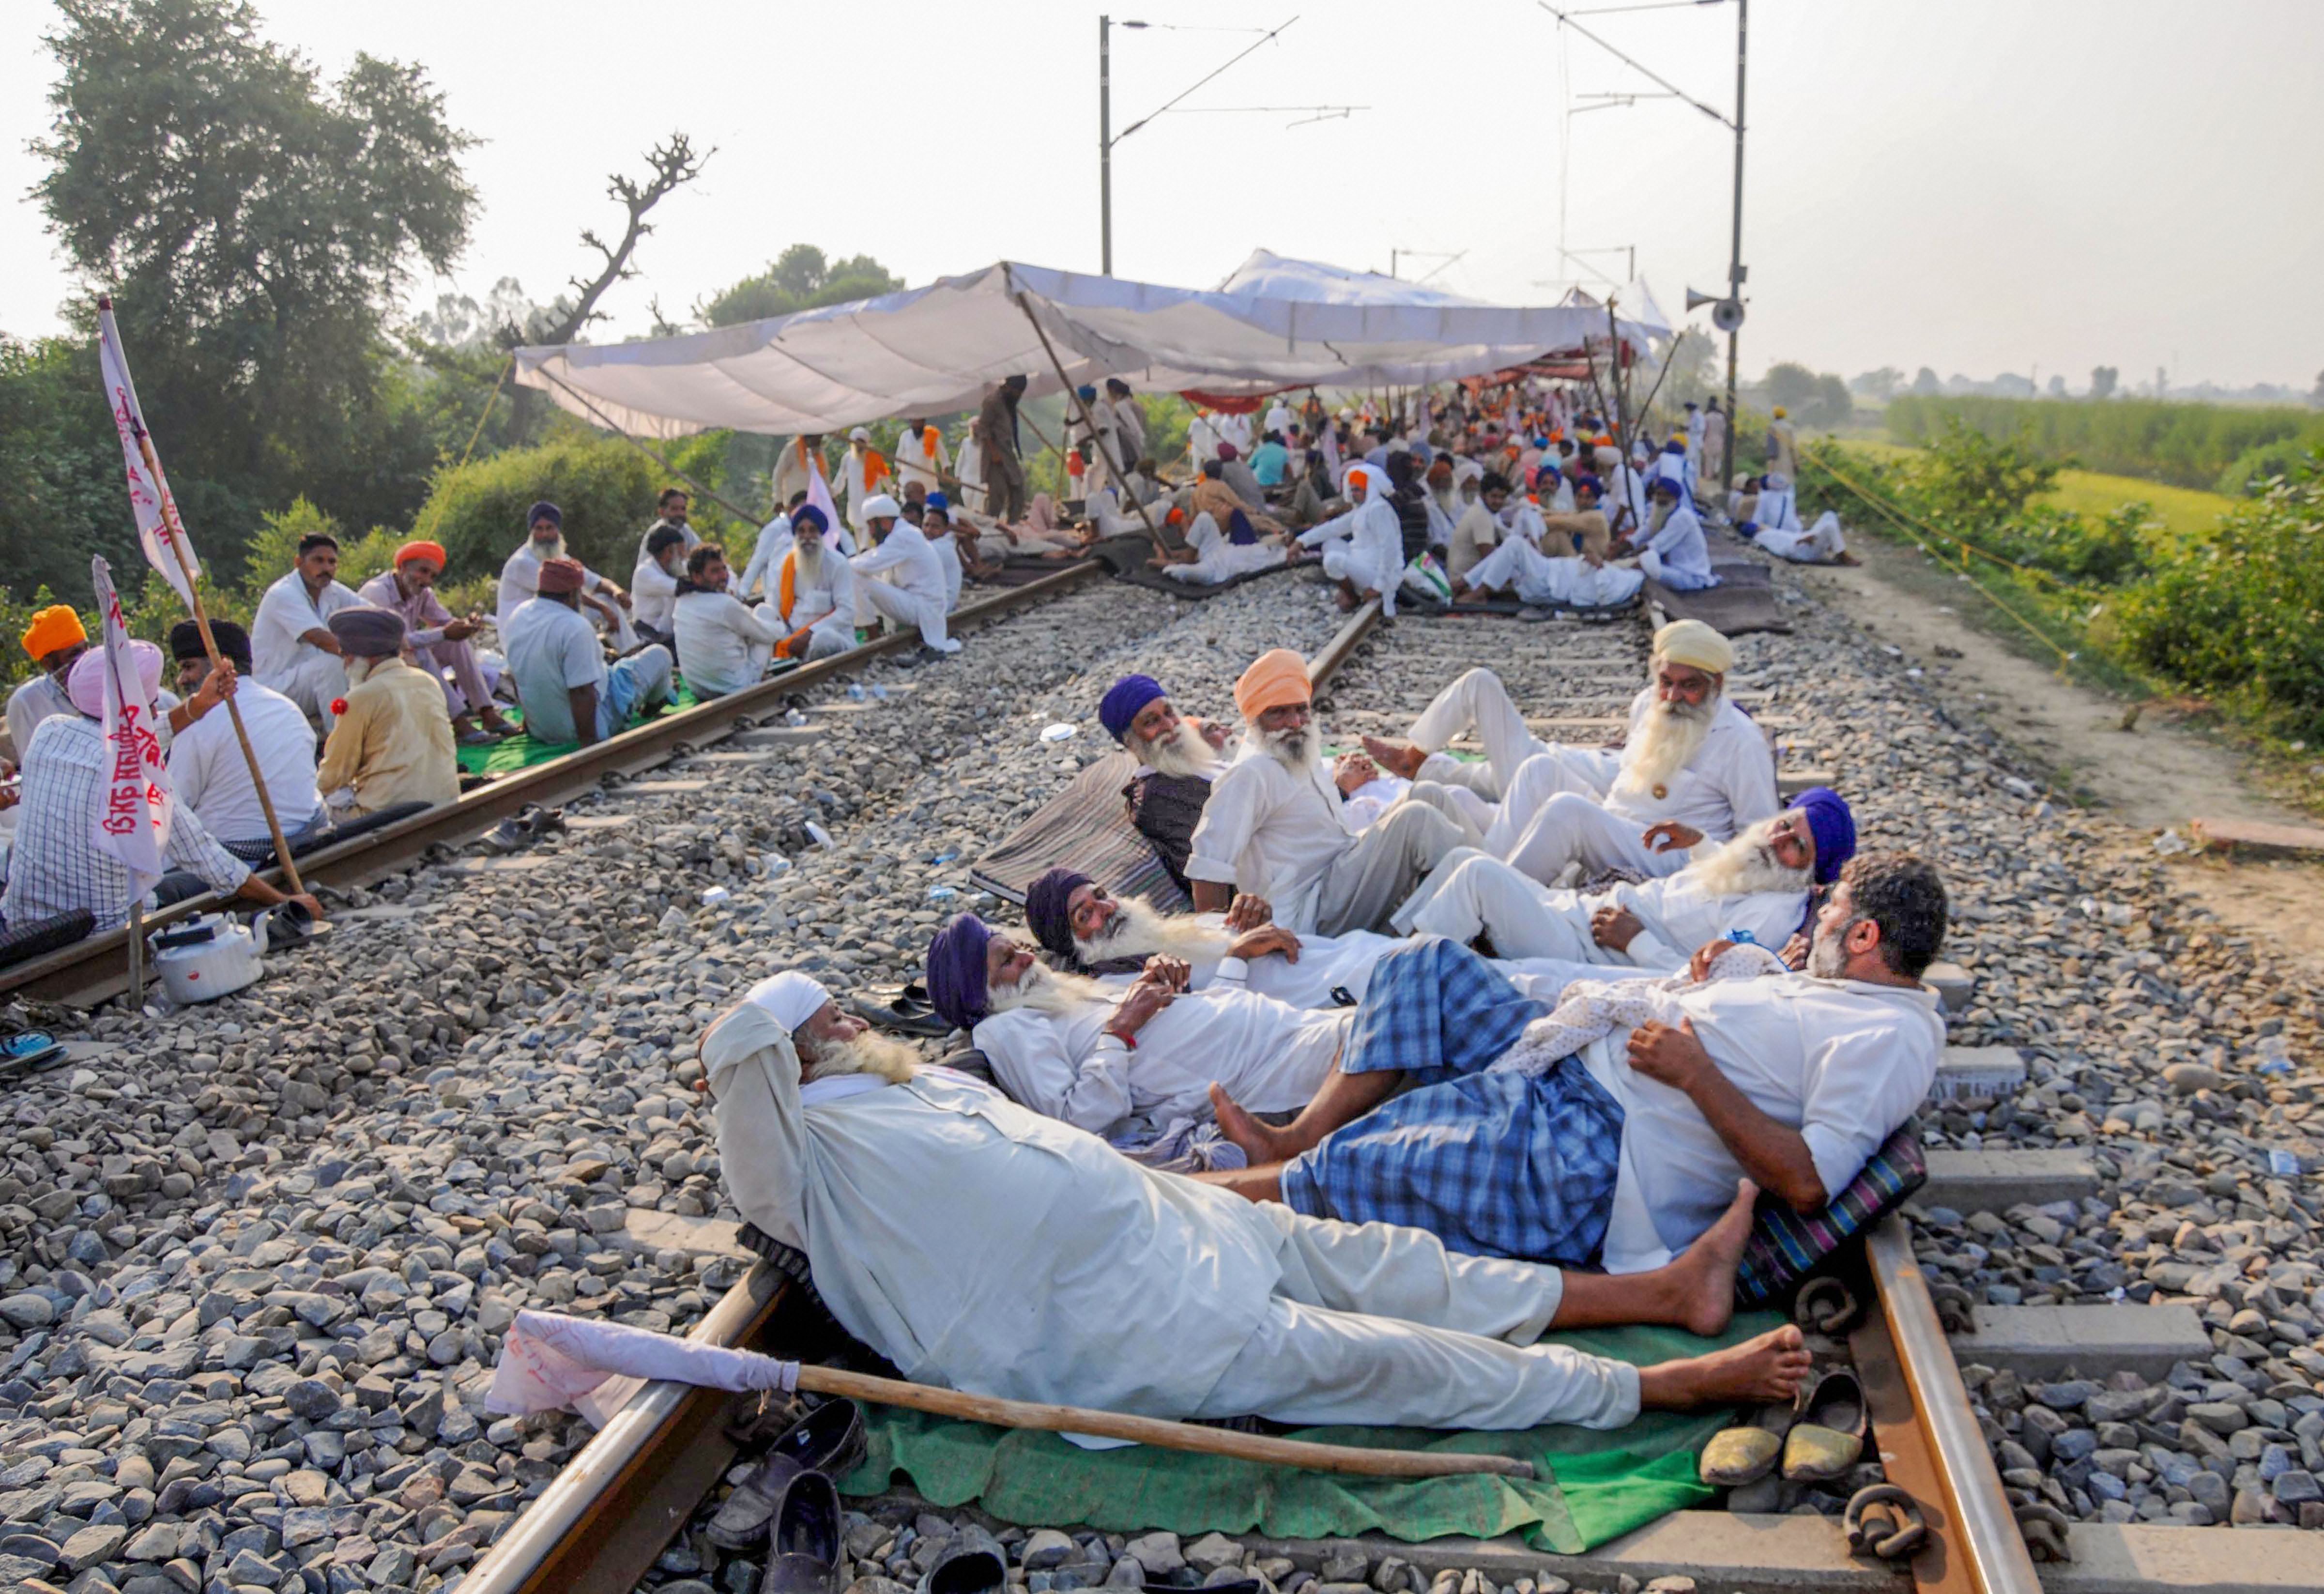 कृषि विधेयकों के खिलाफ हुए भारत बंद के दौरान अमृतसर के पास रेलवे ट्रैक पर प्रदर्शन करते किसान. (फोटो: पीटीआई)